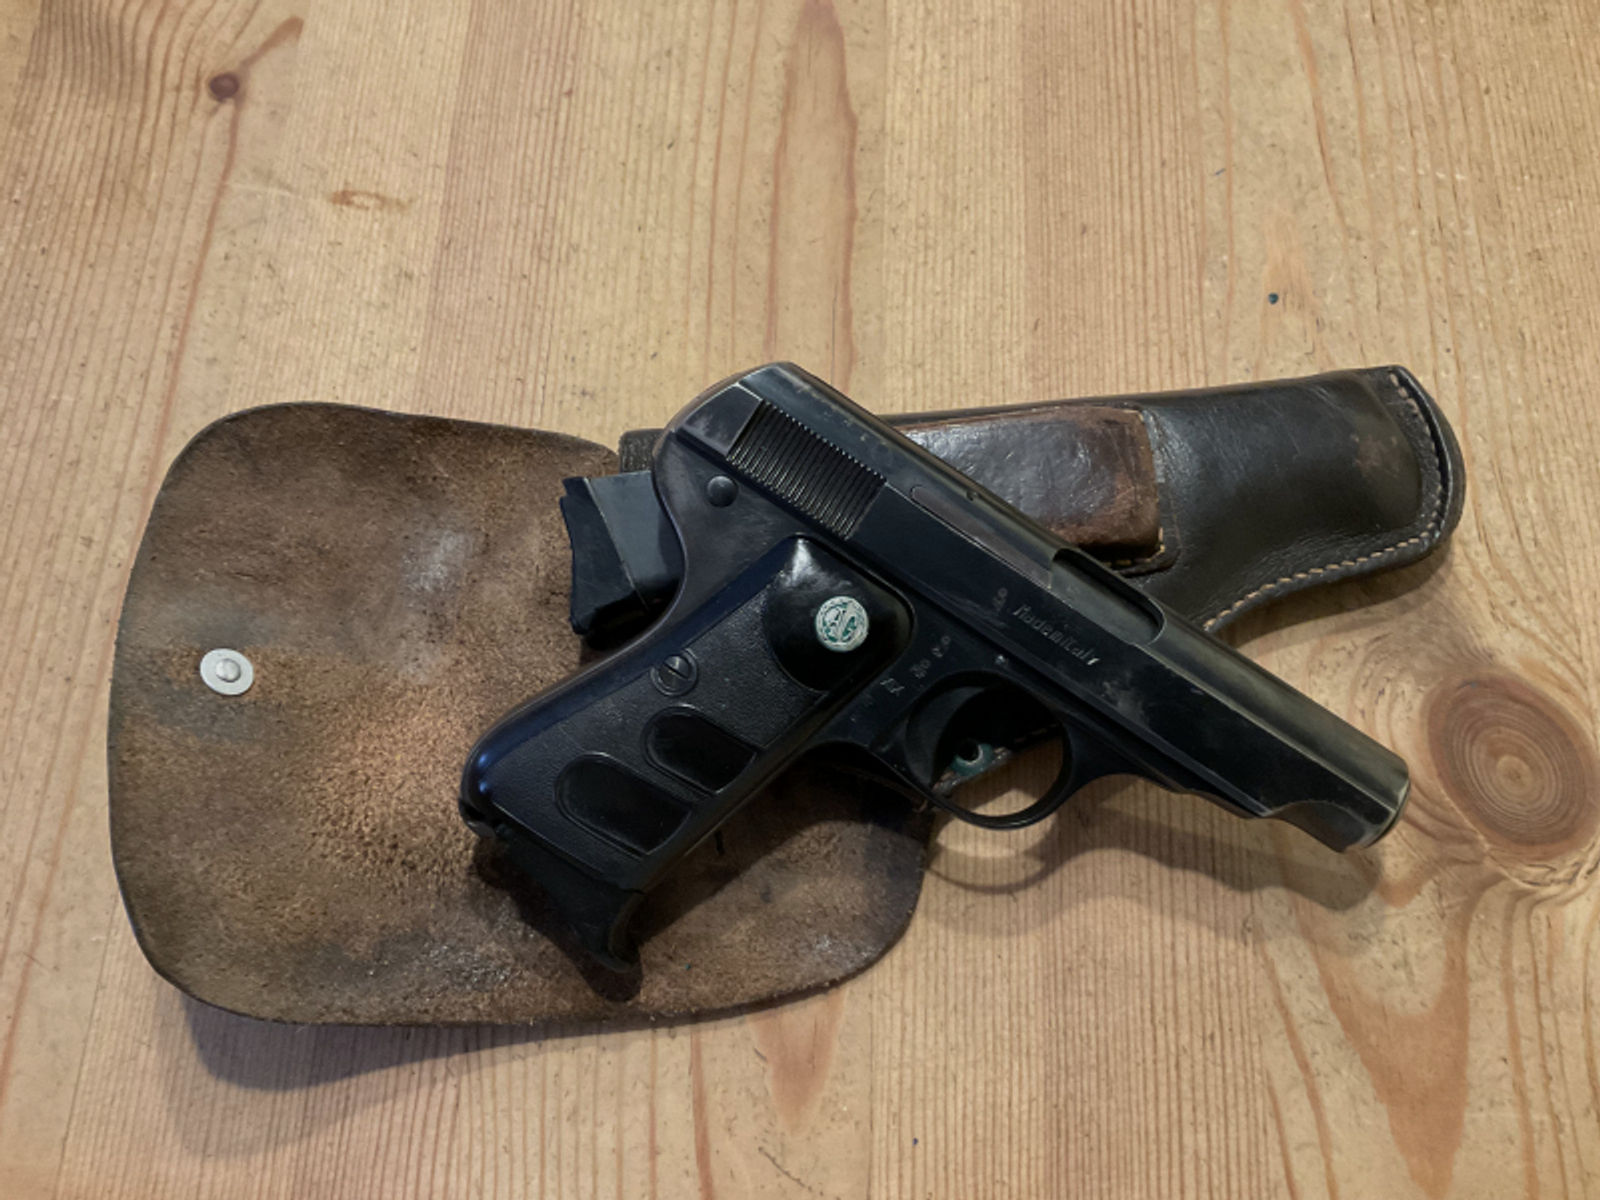 Pistole Galesi im Kaliber 7,65mmBrowning mit Tasche und Ersatzmagazin SNR 207371